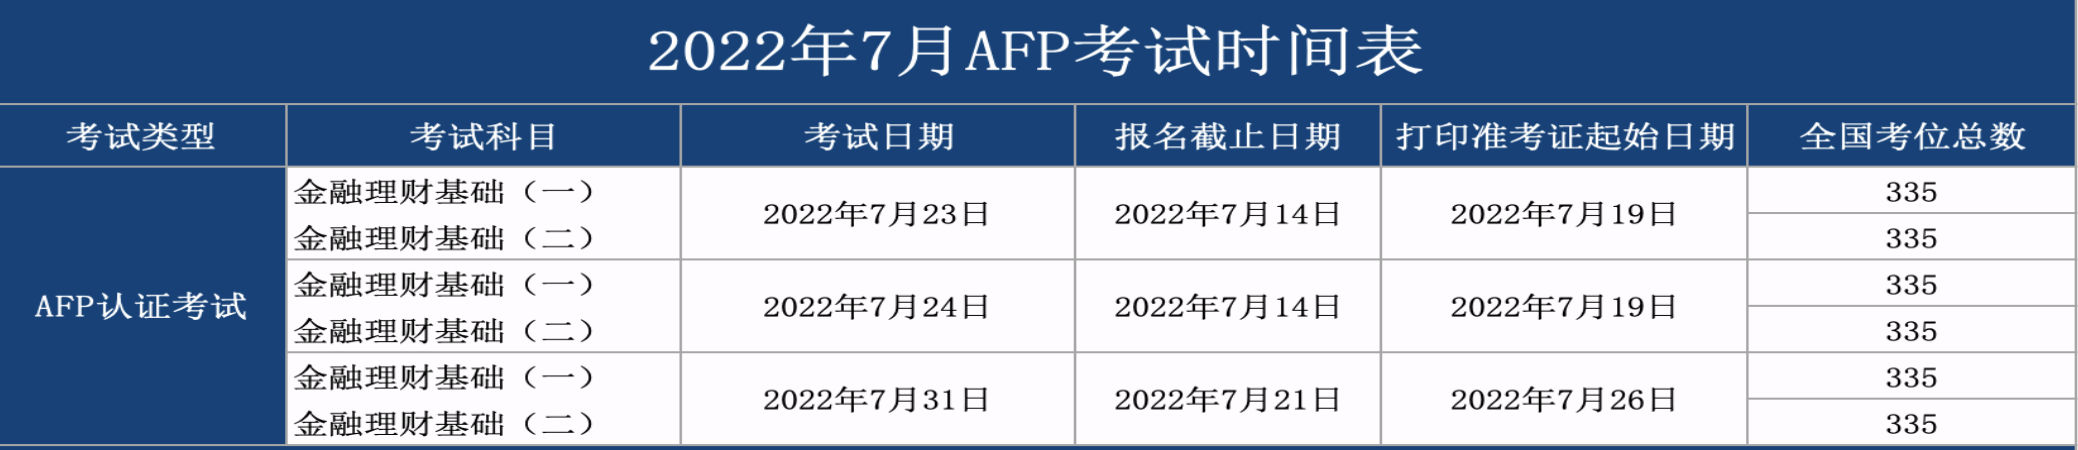 7月AFP考试报名时间